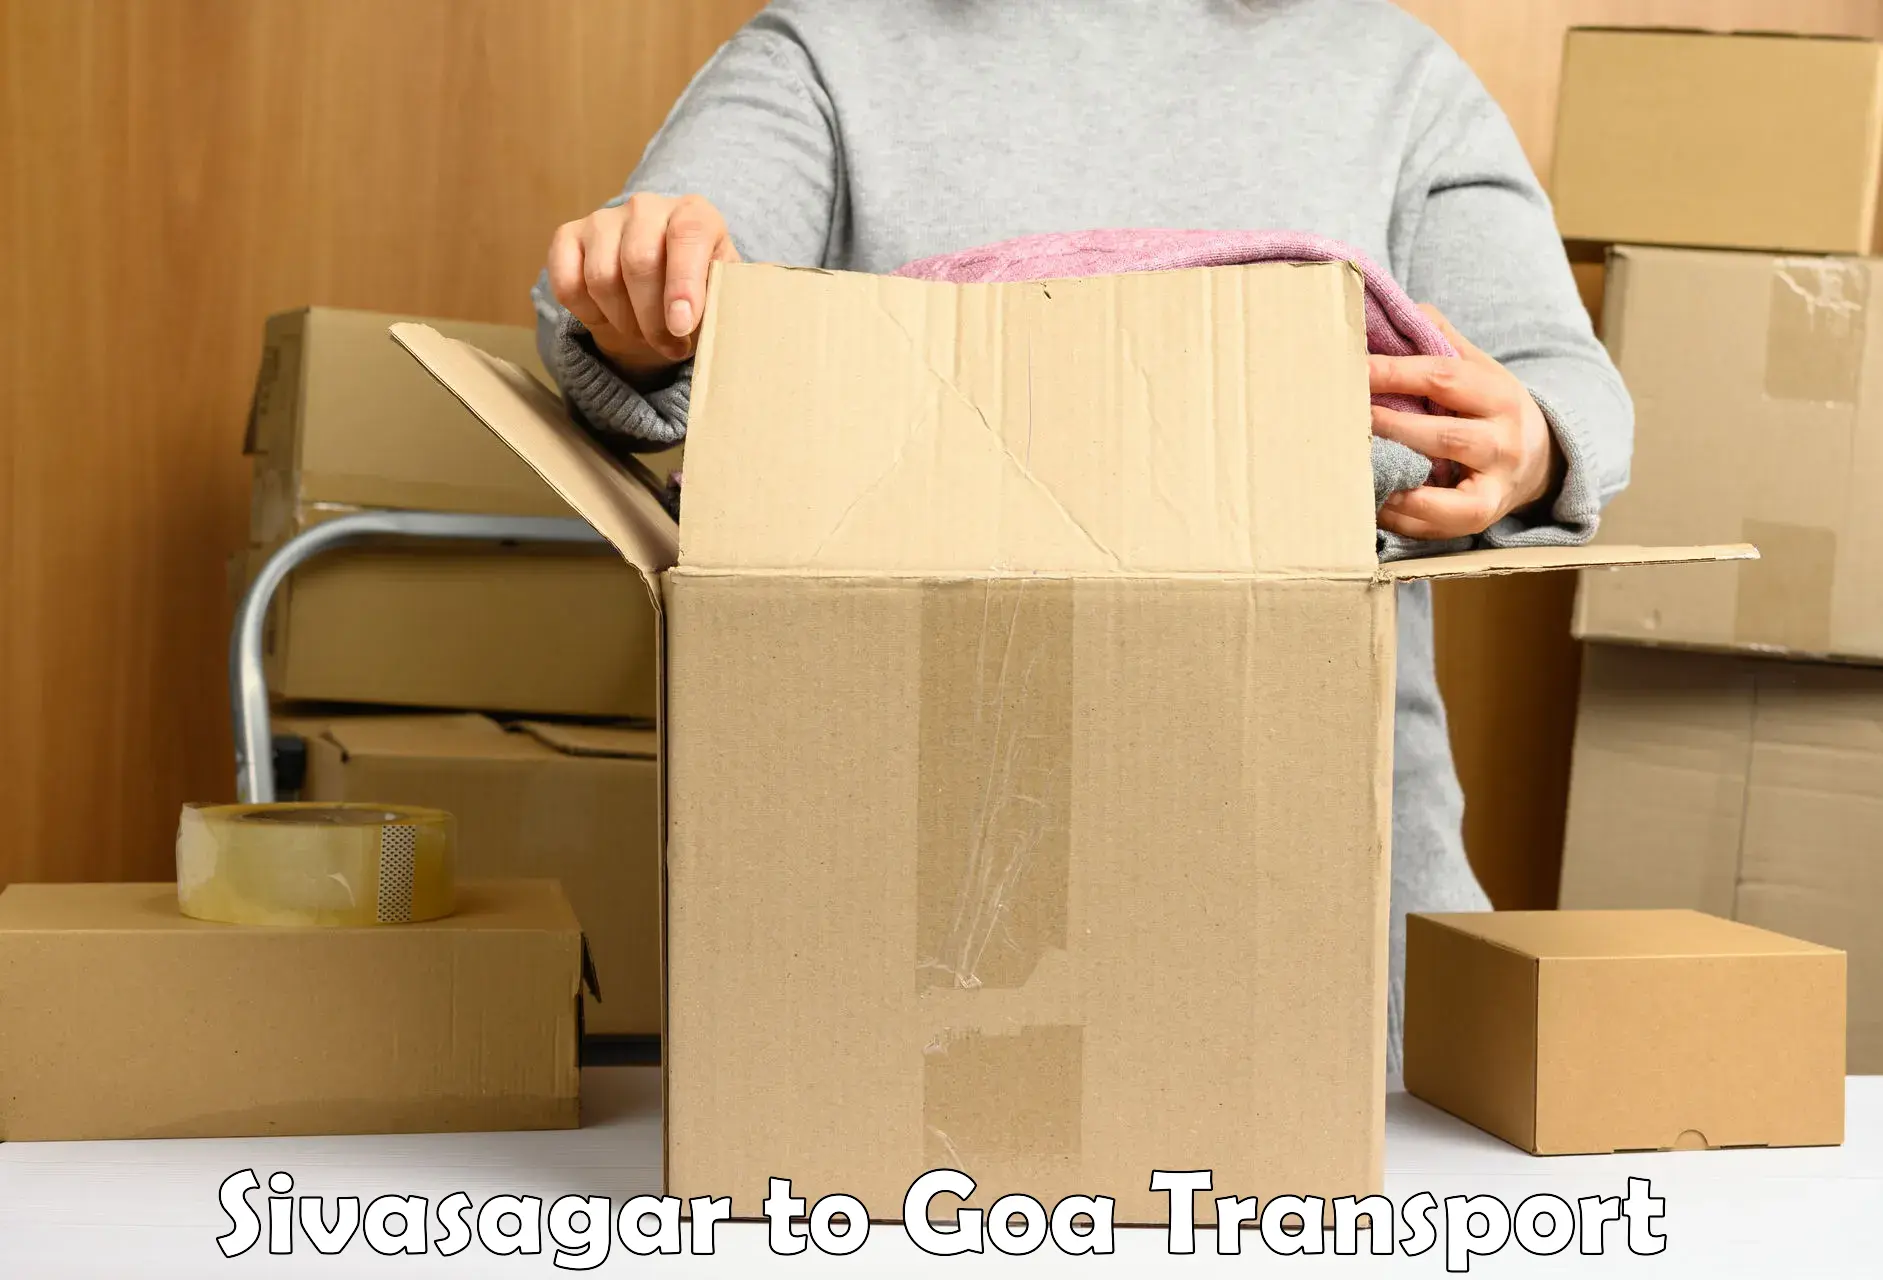 Cargo transport services Sivasagar to Panjim